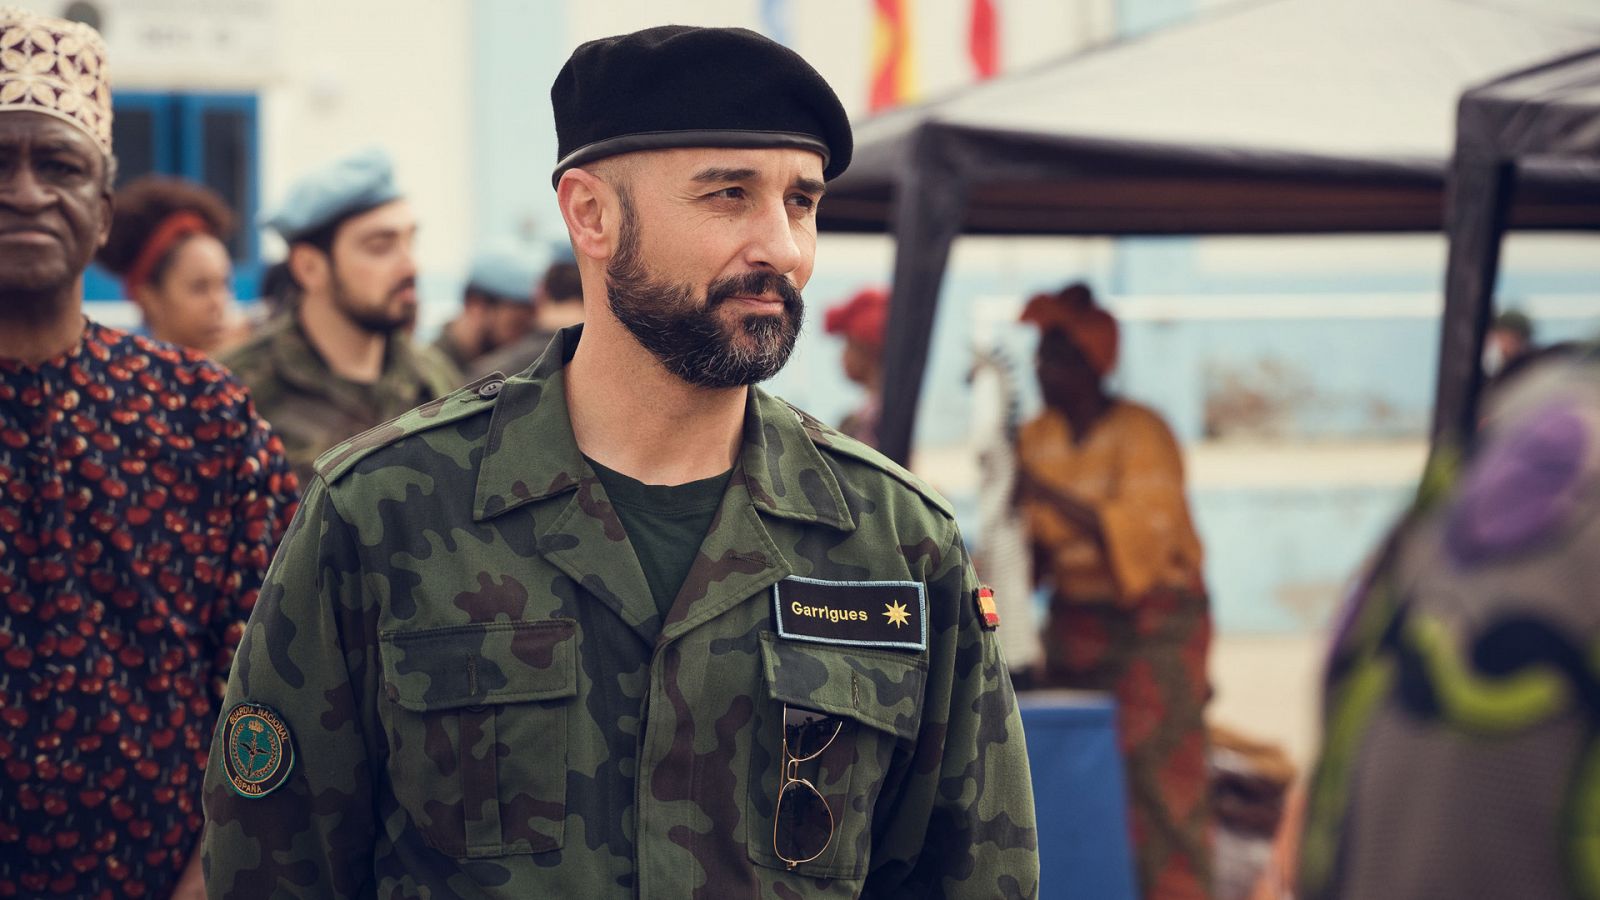 Fuerza de paz - Comandante Román Garrigues (Alain Hernández)